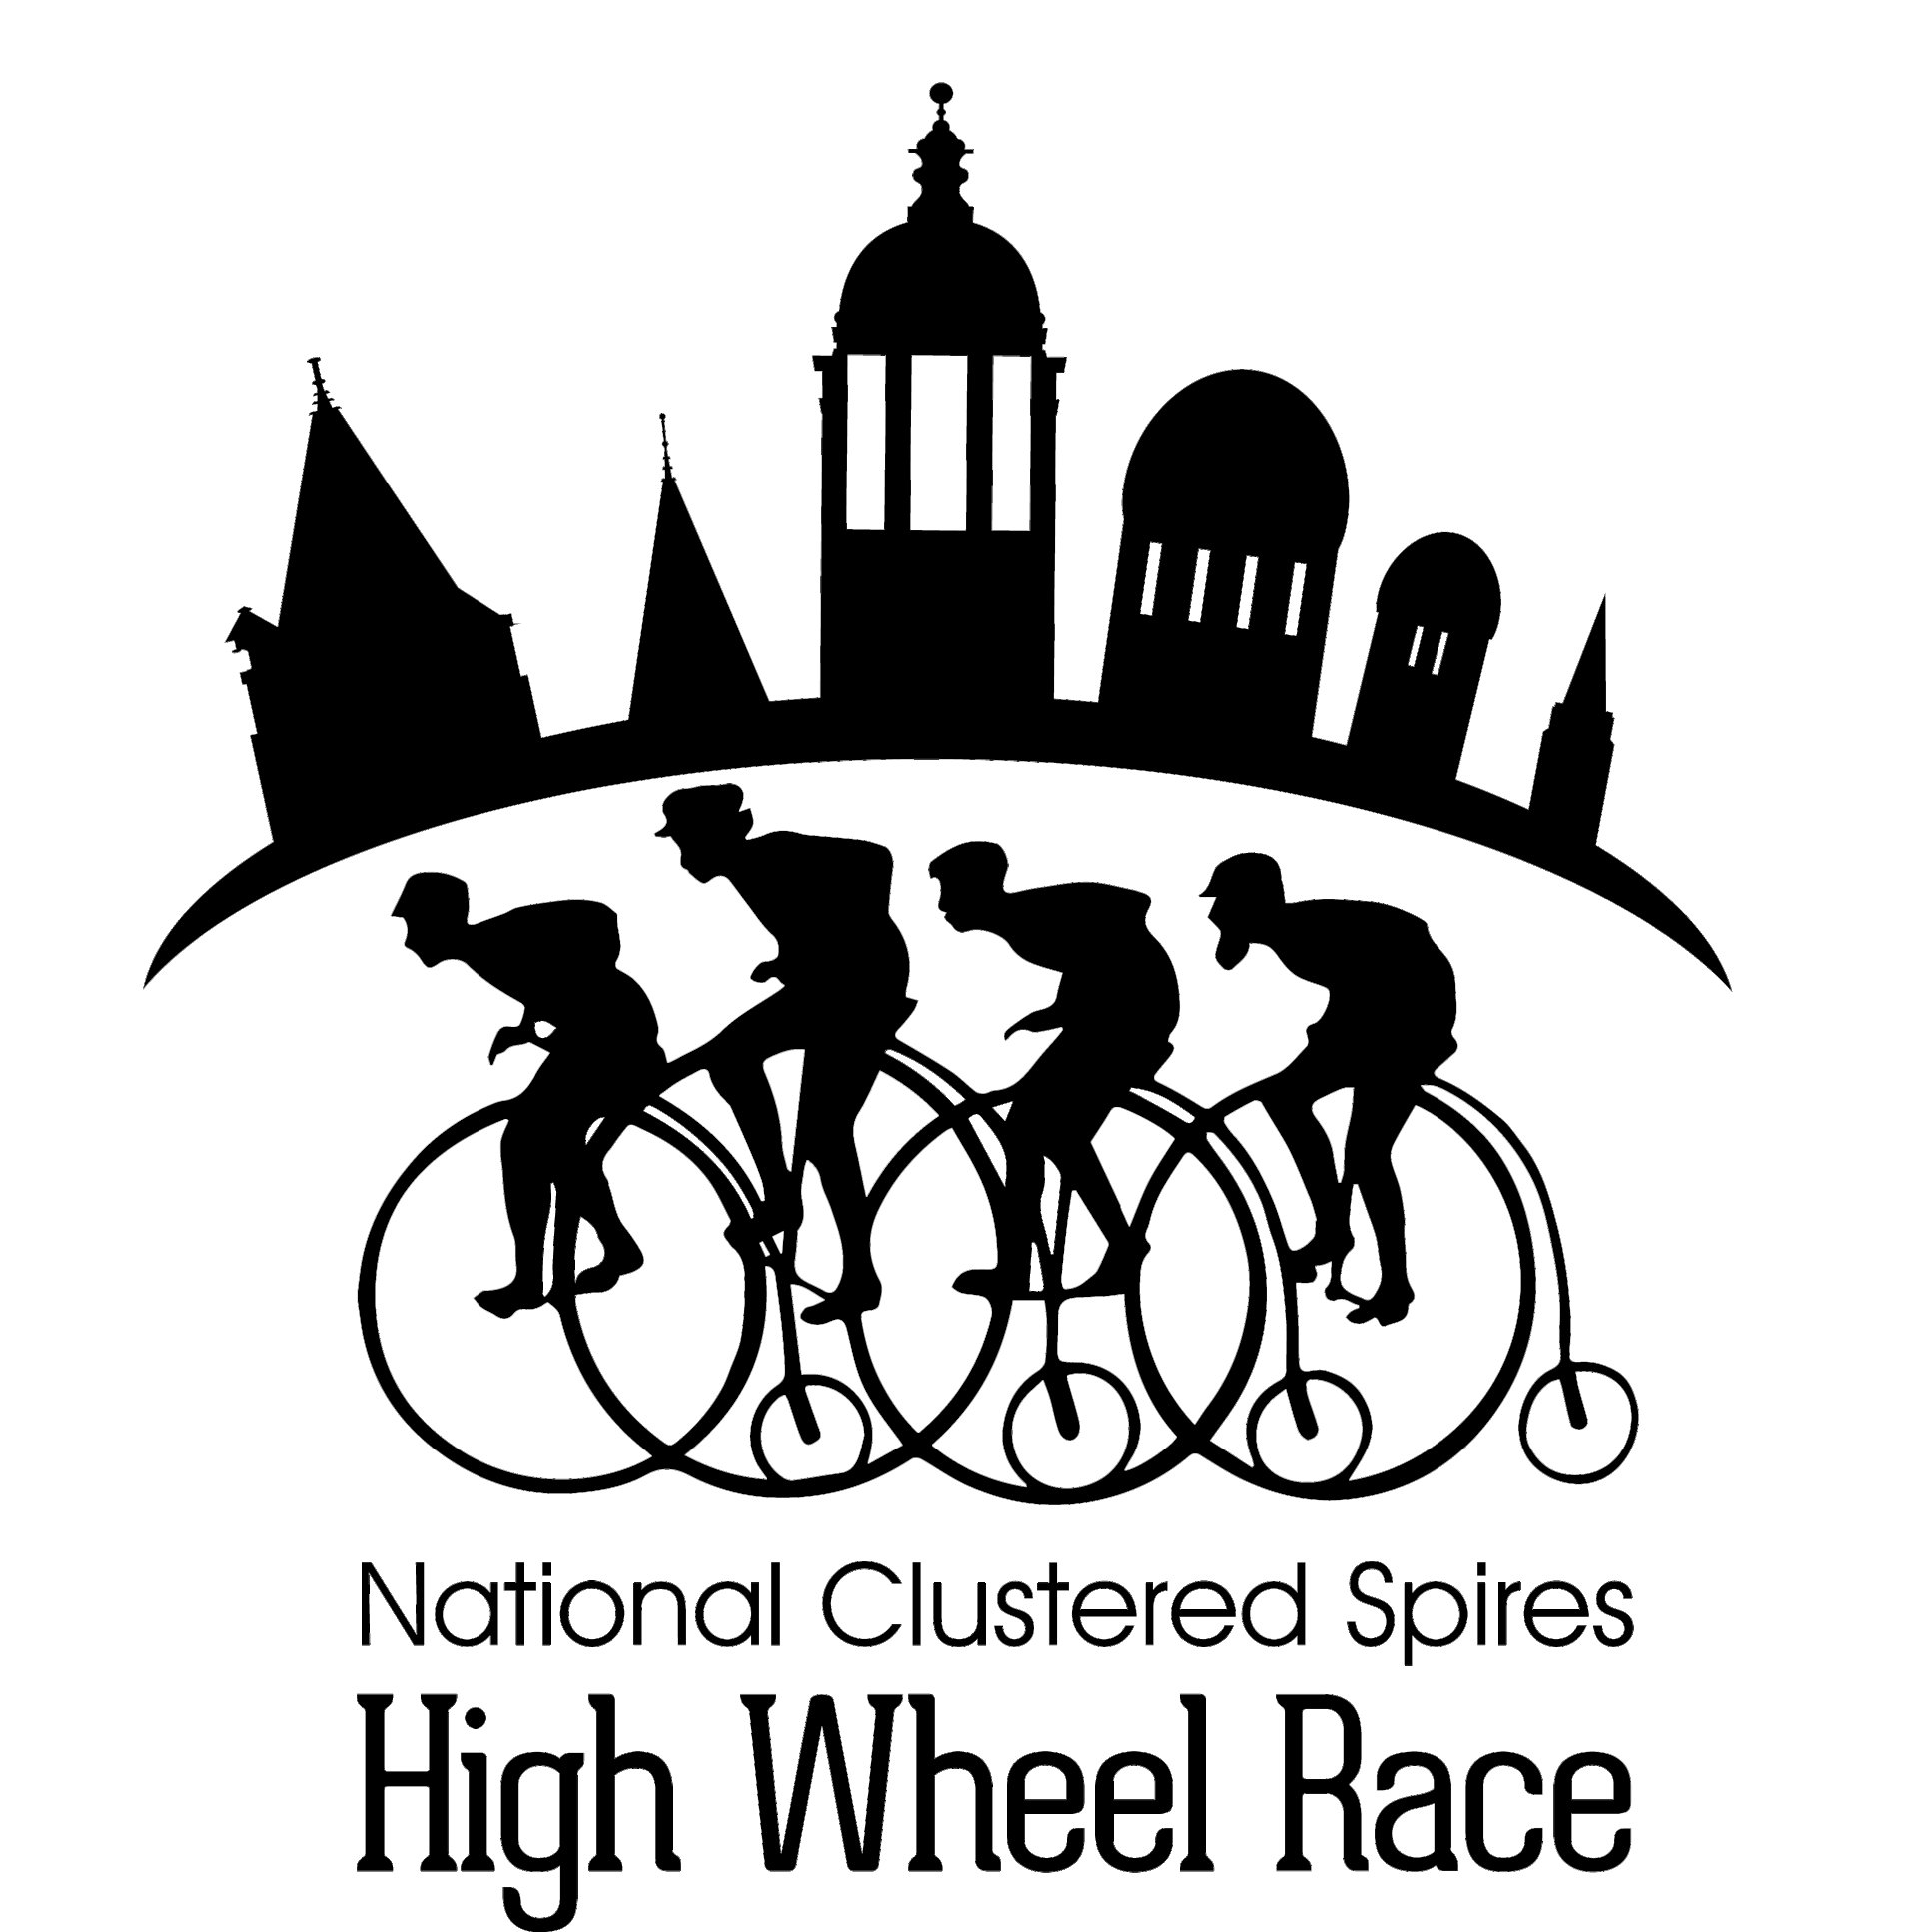 www.highwheelrace.com